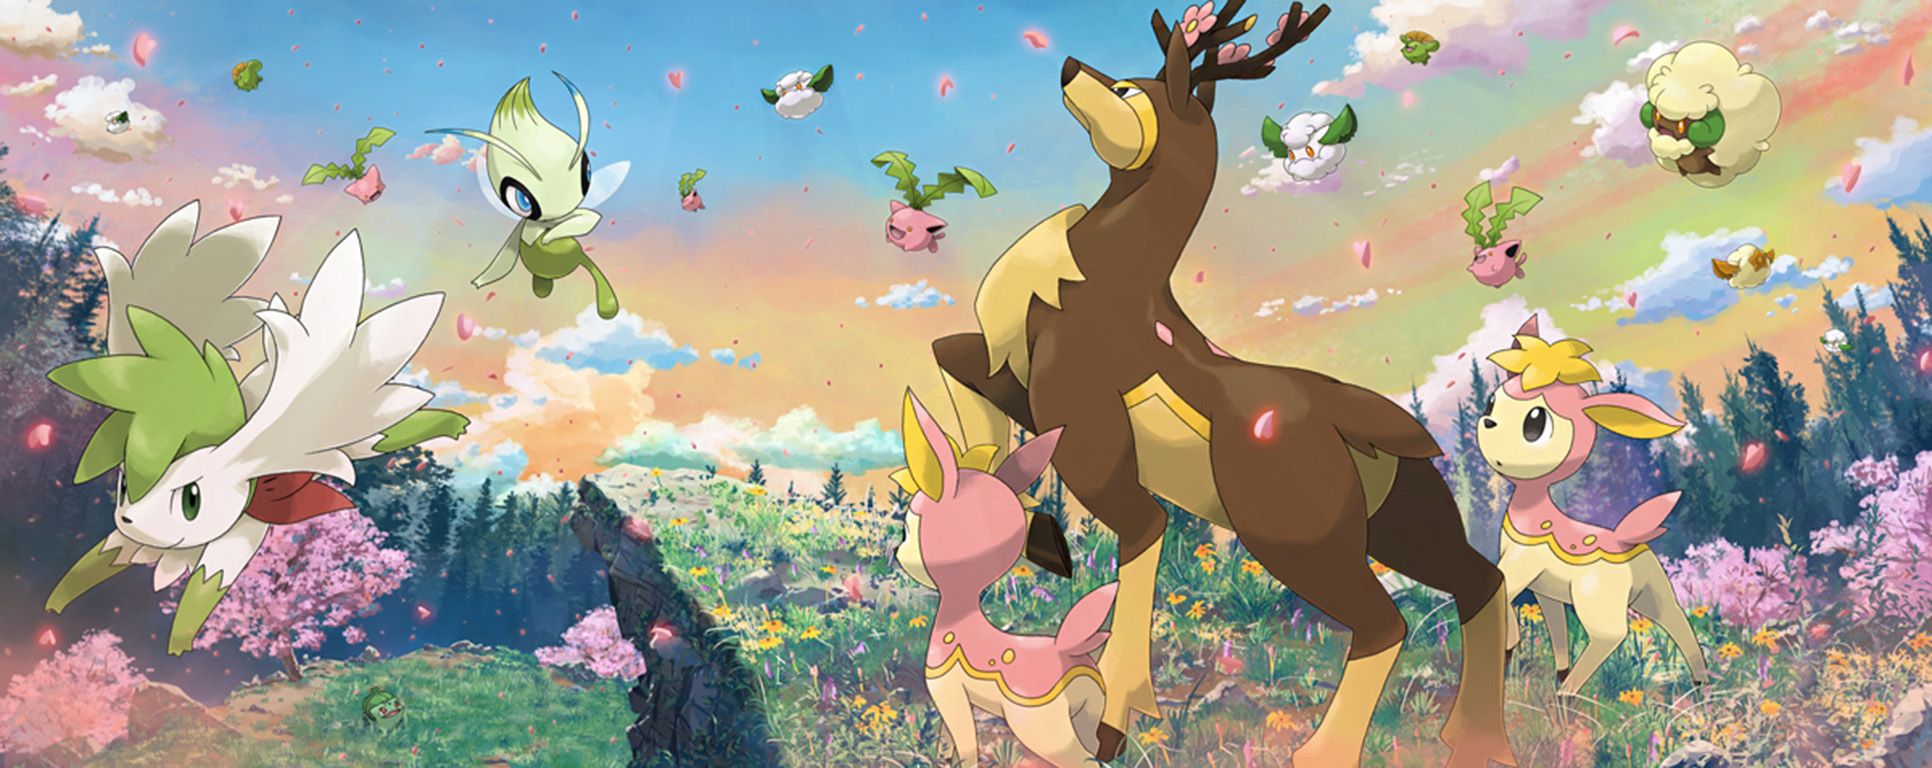 Title Grass Pokemon Anime Pokémon Celebi Grass Wallpaper Grass HD Wallpaper